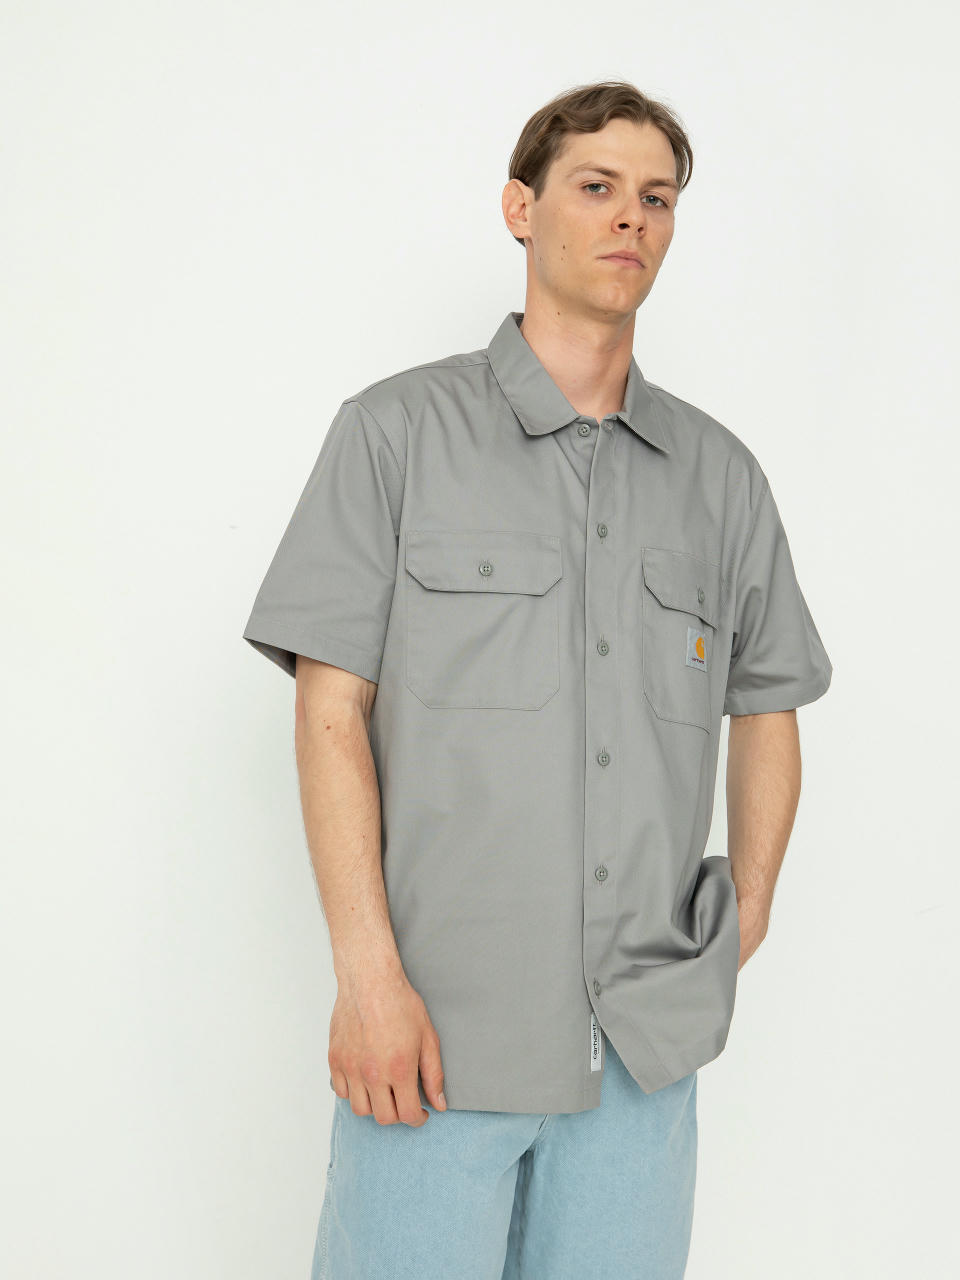 Carhartt WIP Master Shirt (marengo)